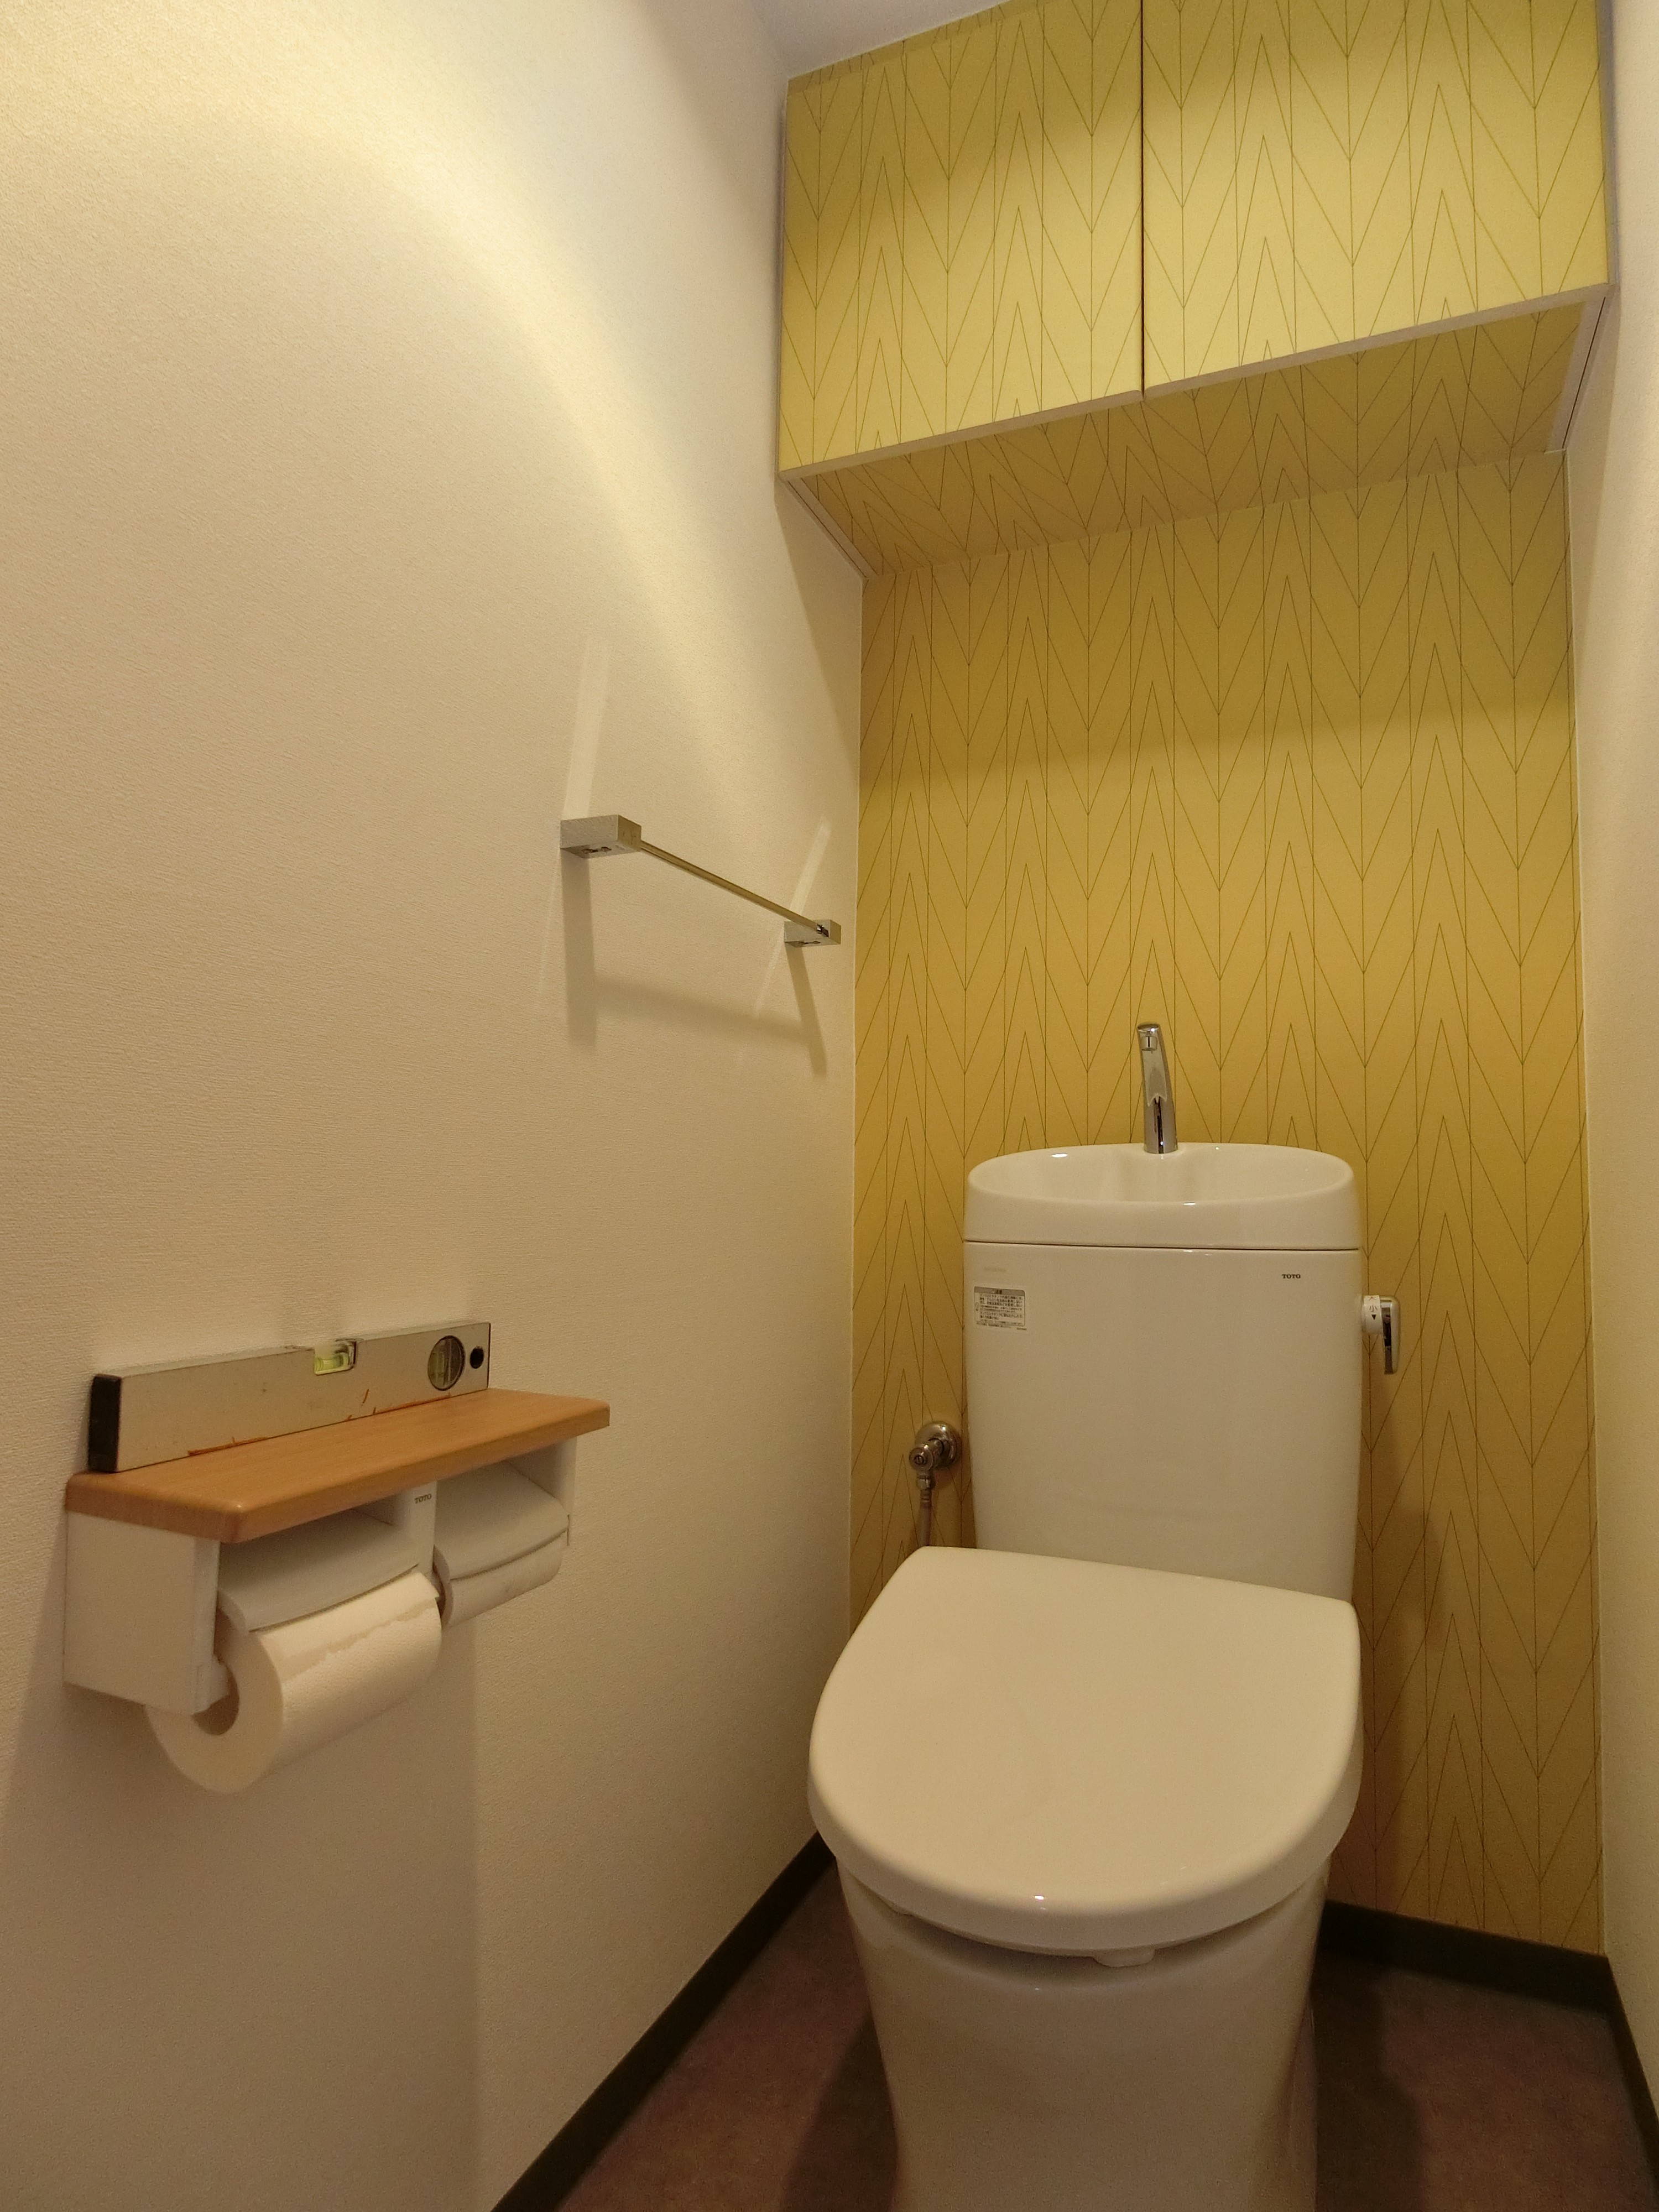 自分好みのトイレ空間 施工事例 高松市 丸亀市のリフォーム リノベーションならアトリエ住まいるへ